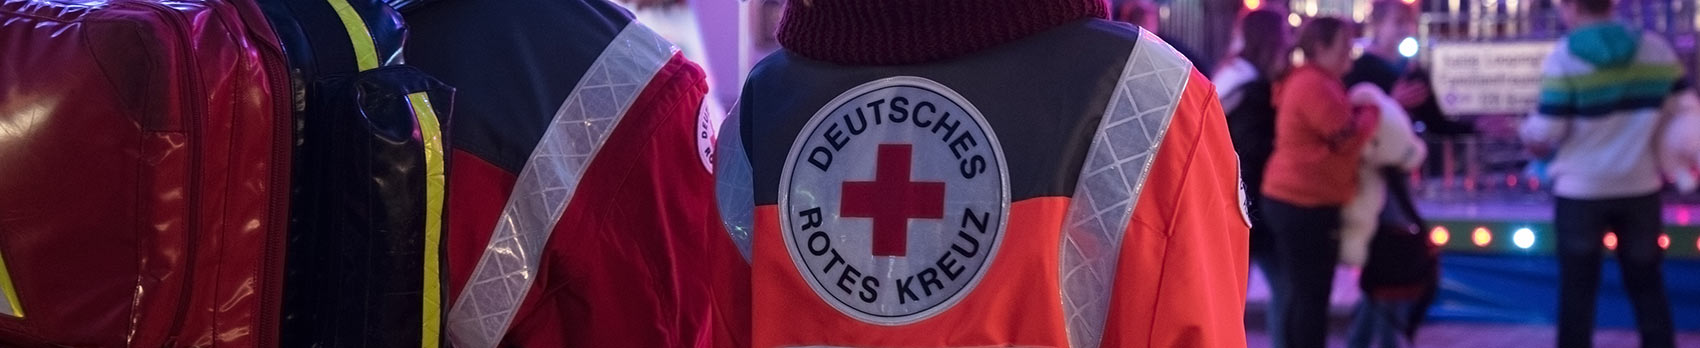 Rettungsdienst ist auf einer Veranstaltung mit einem Notfallrucksack unterwegs